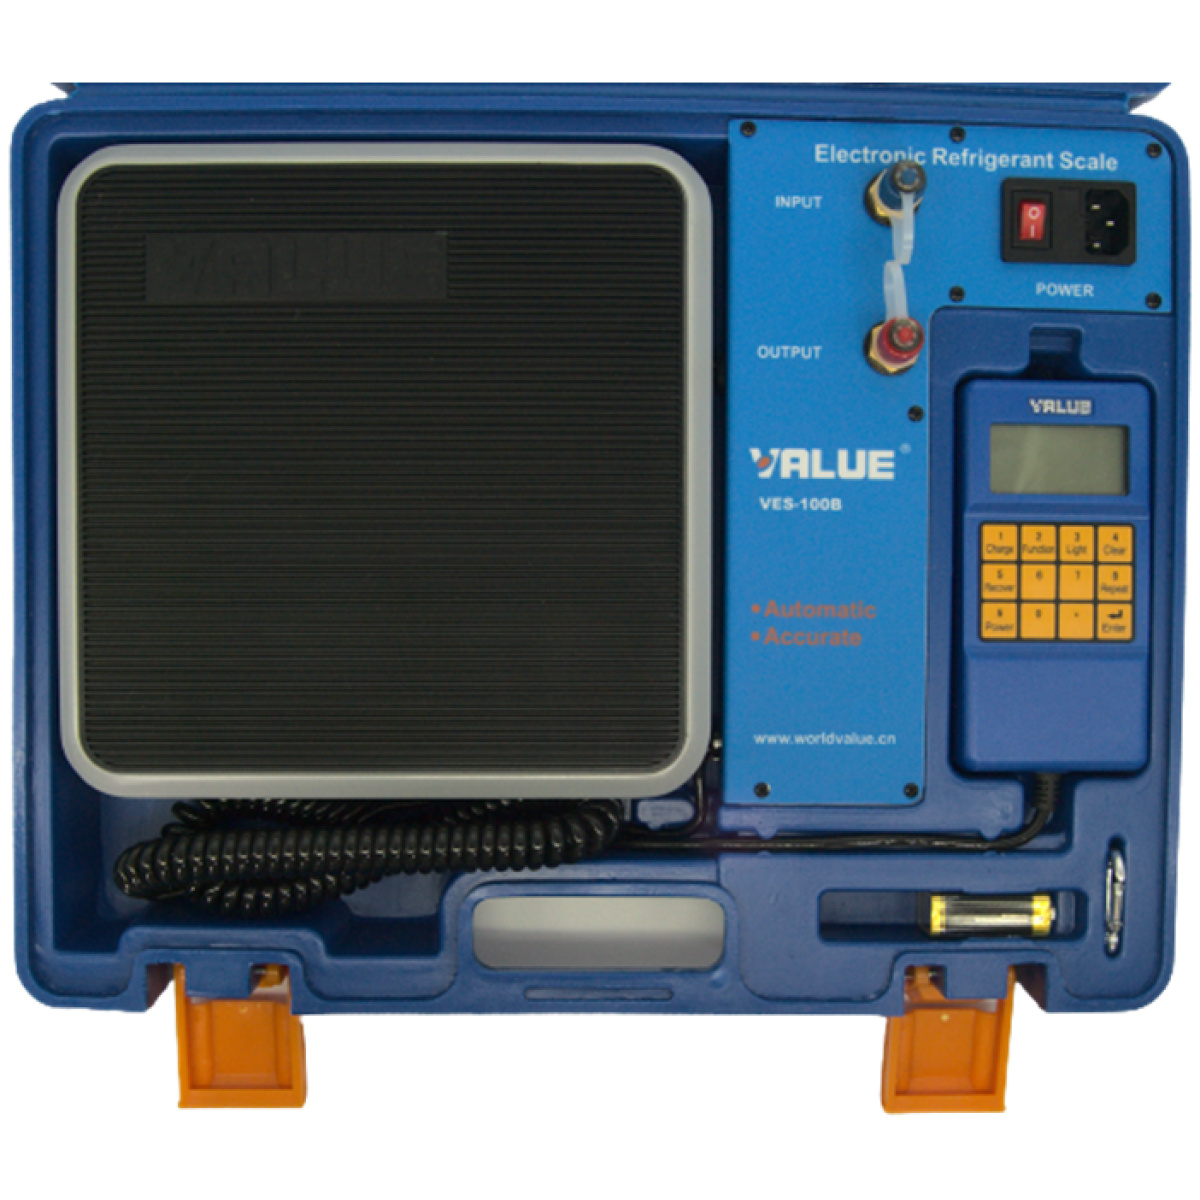 Waga elektroniczna chłodnicza z zaworem odcinającym VES-100B - VALUE